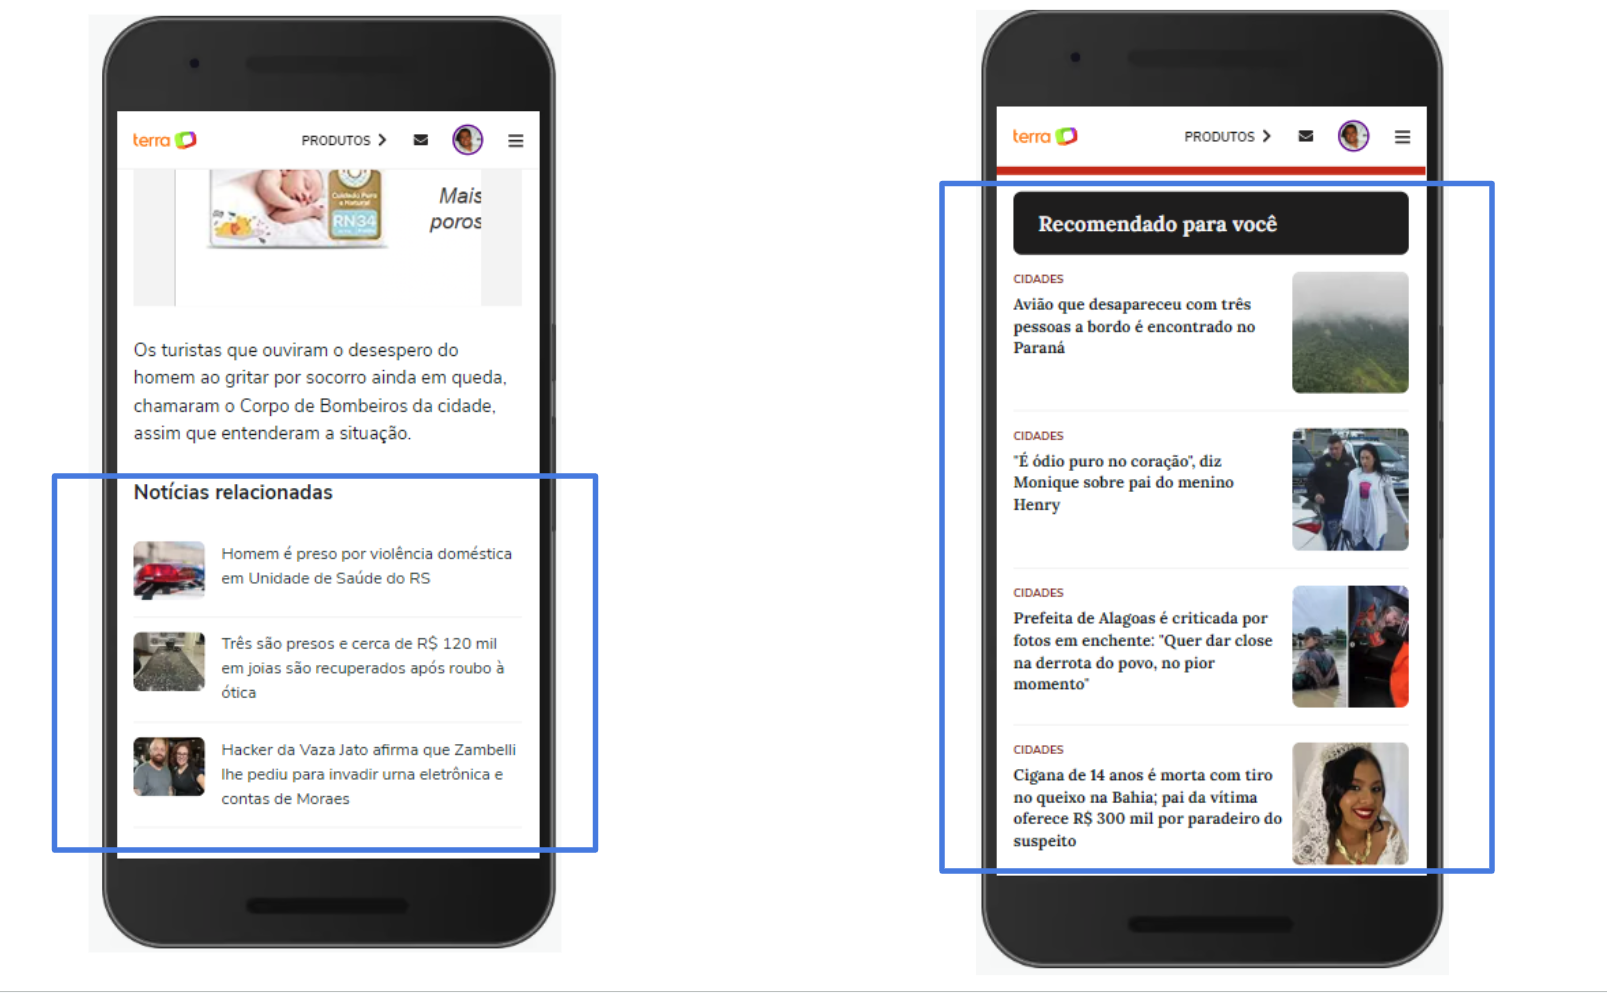 Скриншот двух разделов веб-сайта Terra, ссылки на которые были предварительно загружены. Слева выделен раздел «Похожий контент», а справа — раздел «Рекомендуется для вас».